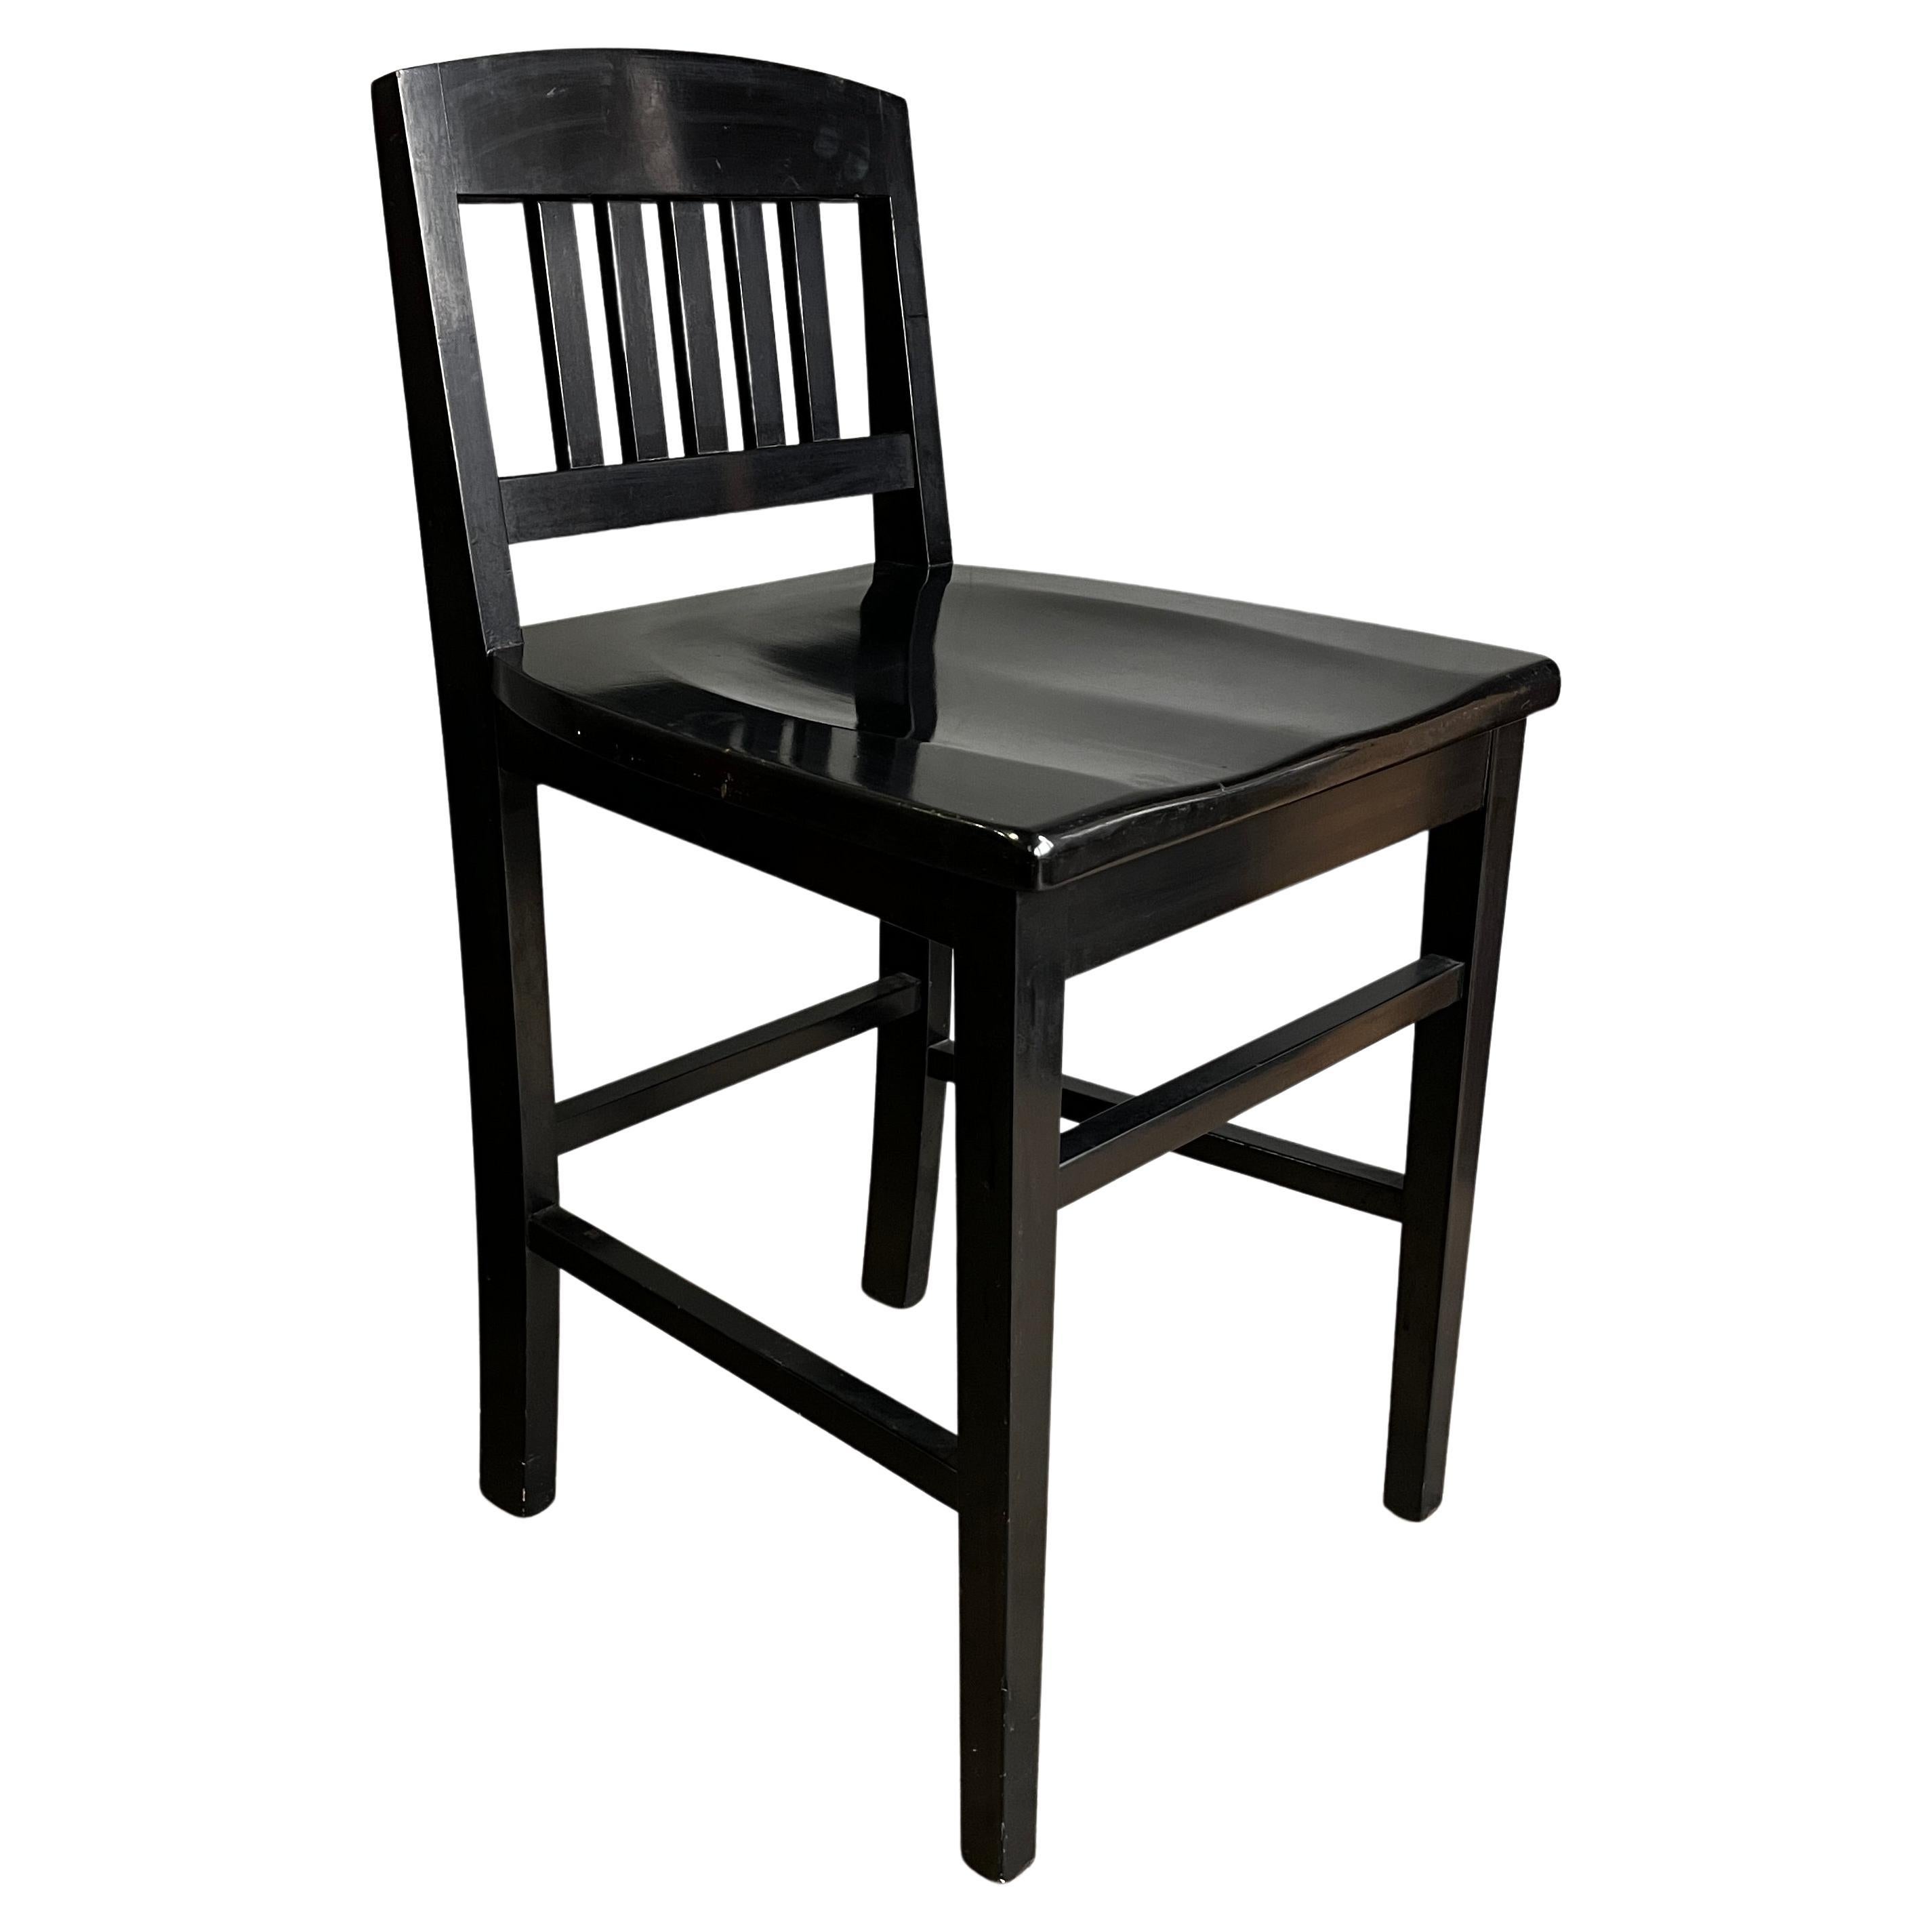 Petite chaise noire mi-siècle remarquable de forme saisissante